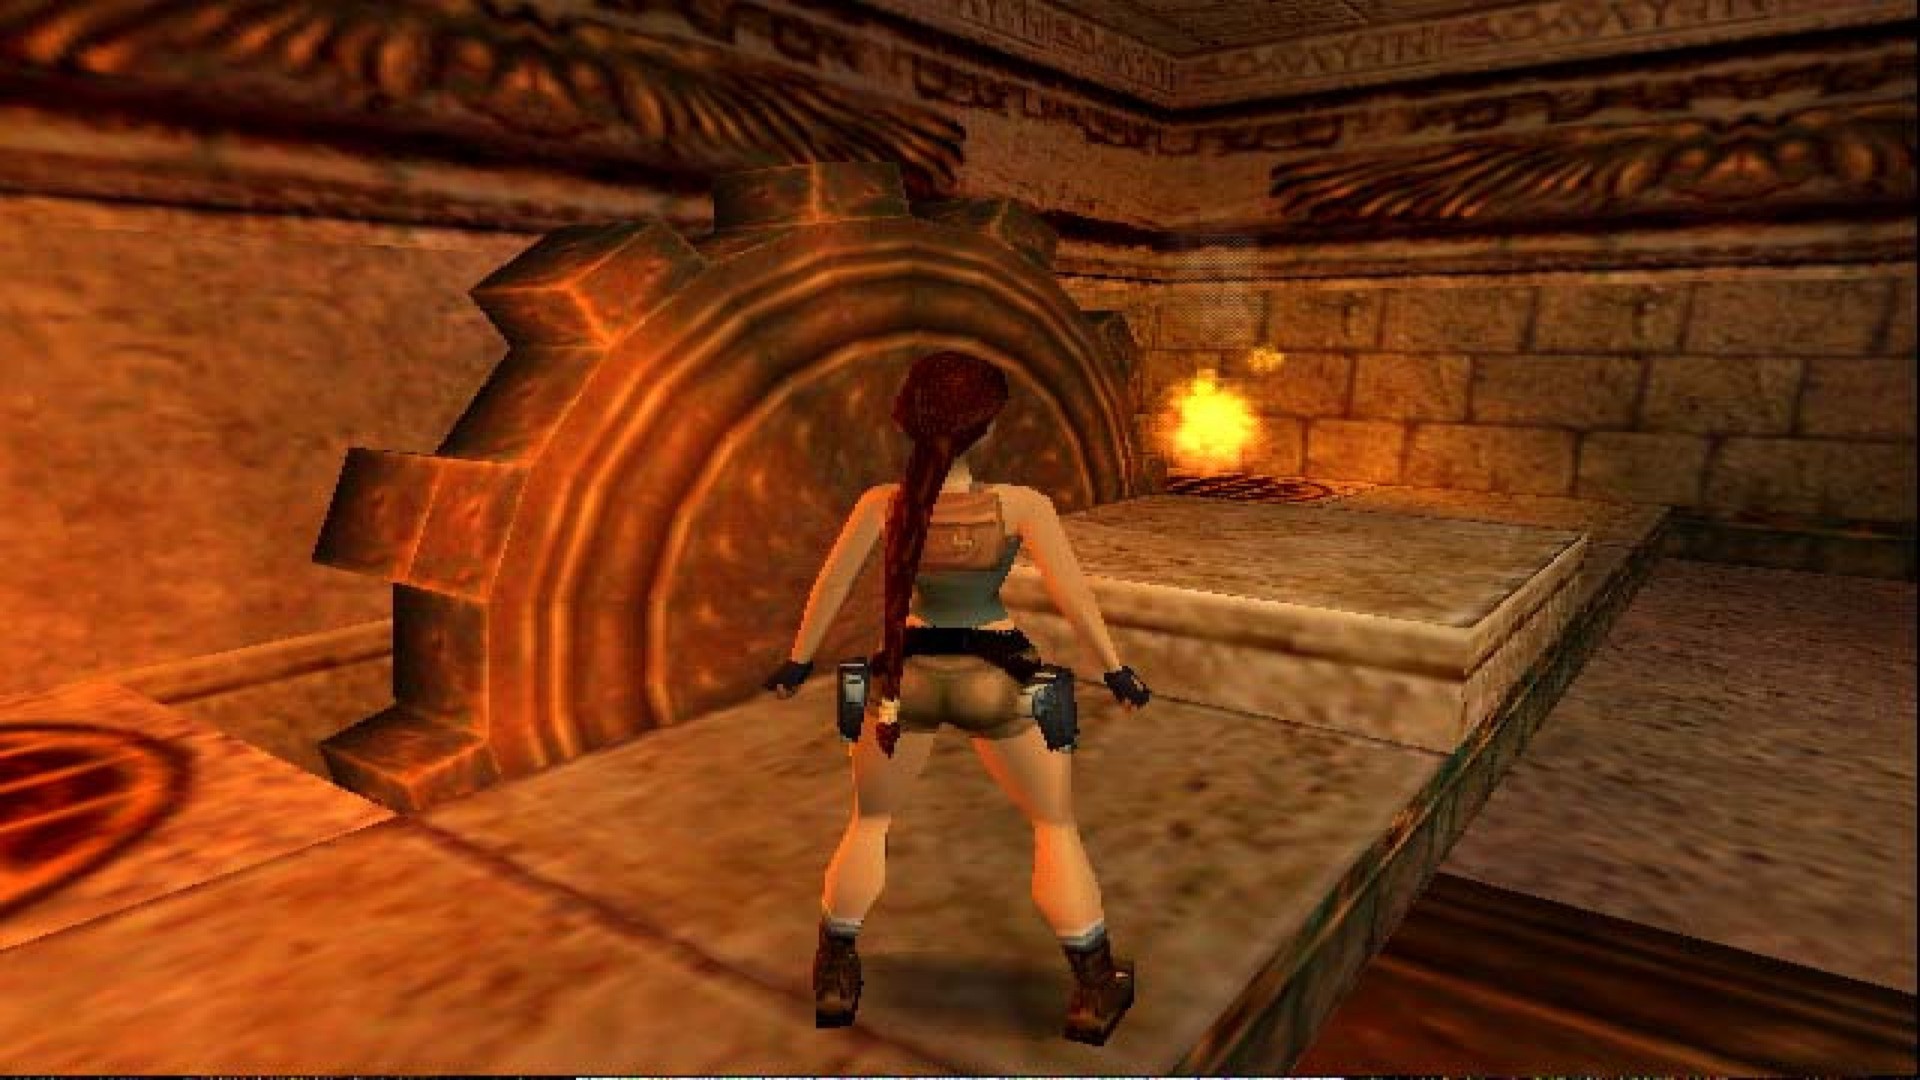 Tomb Raider IV: The Last Revelation on Steam